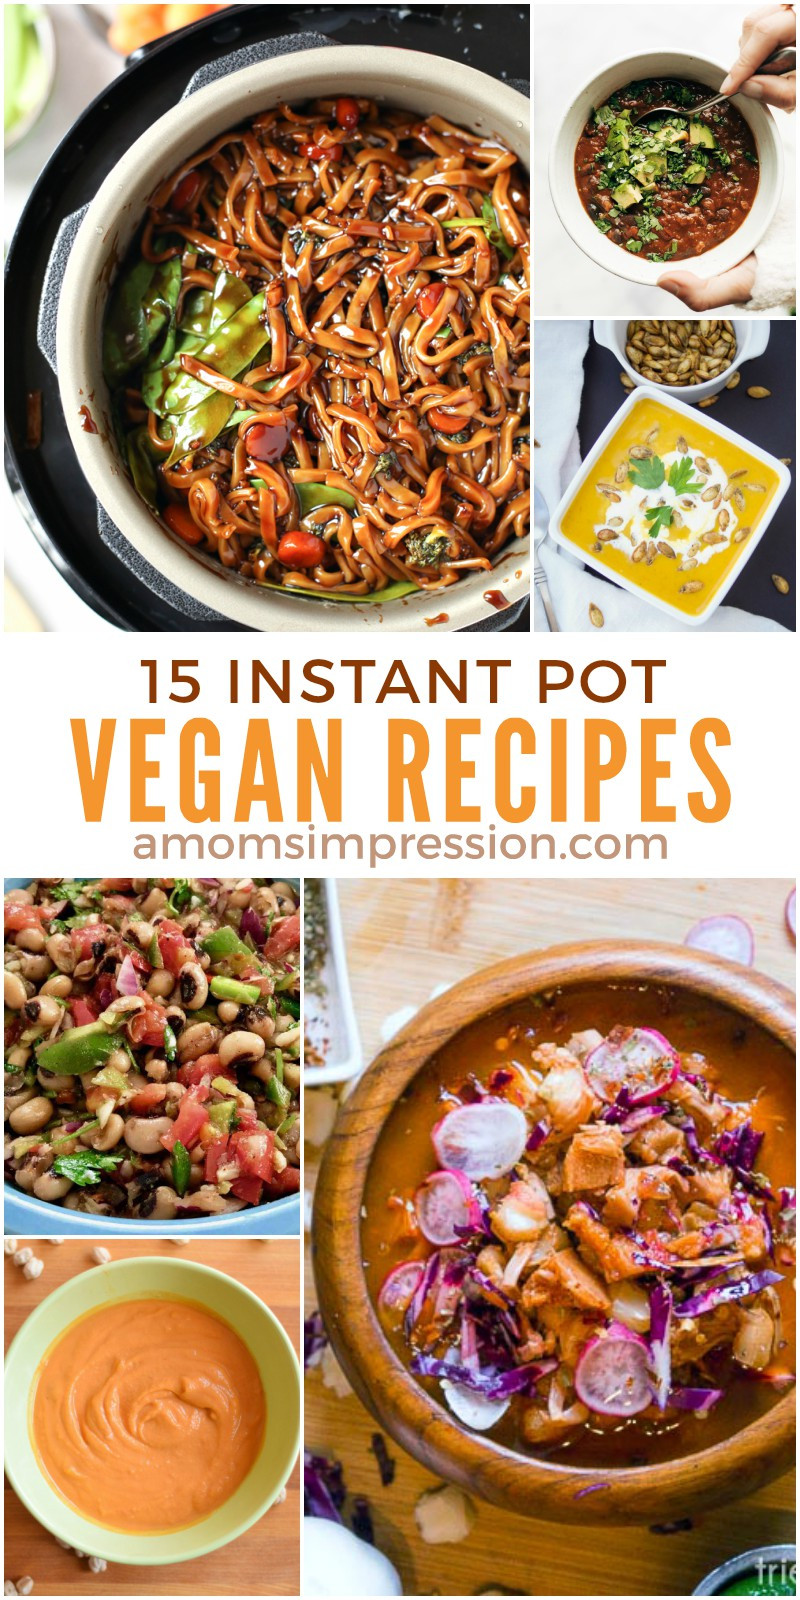 Easy Instant Pot Recipes Vegetarian
 15 Healthy and Delicious Vegan Instant Pot Recipes